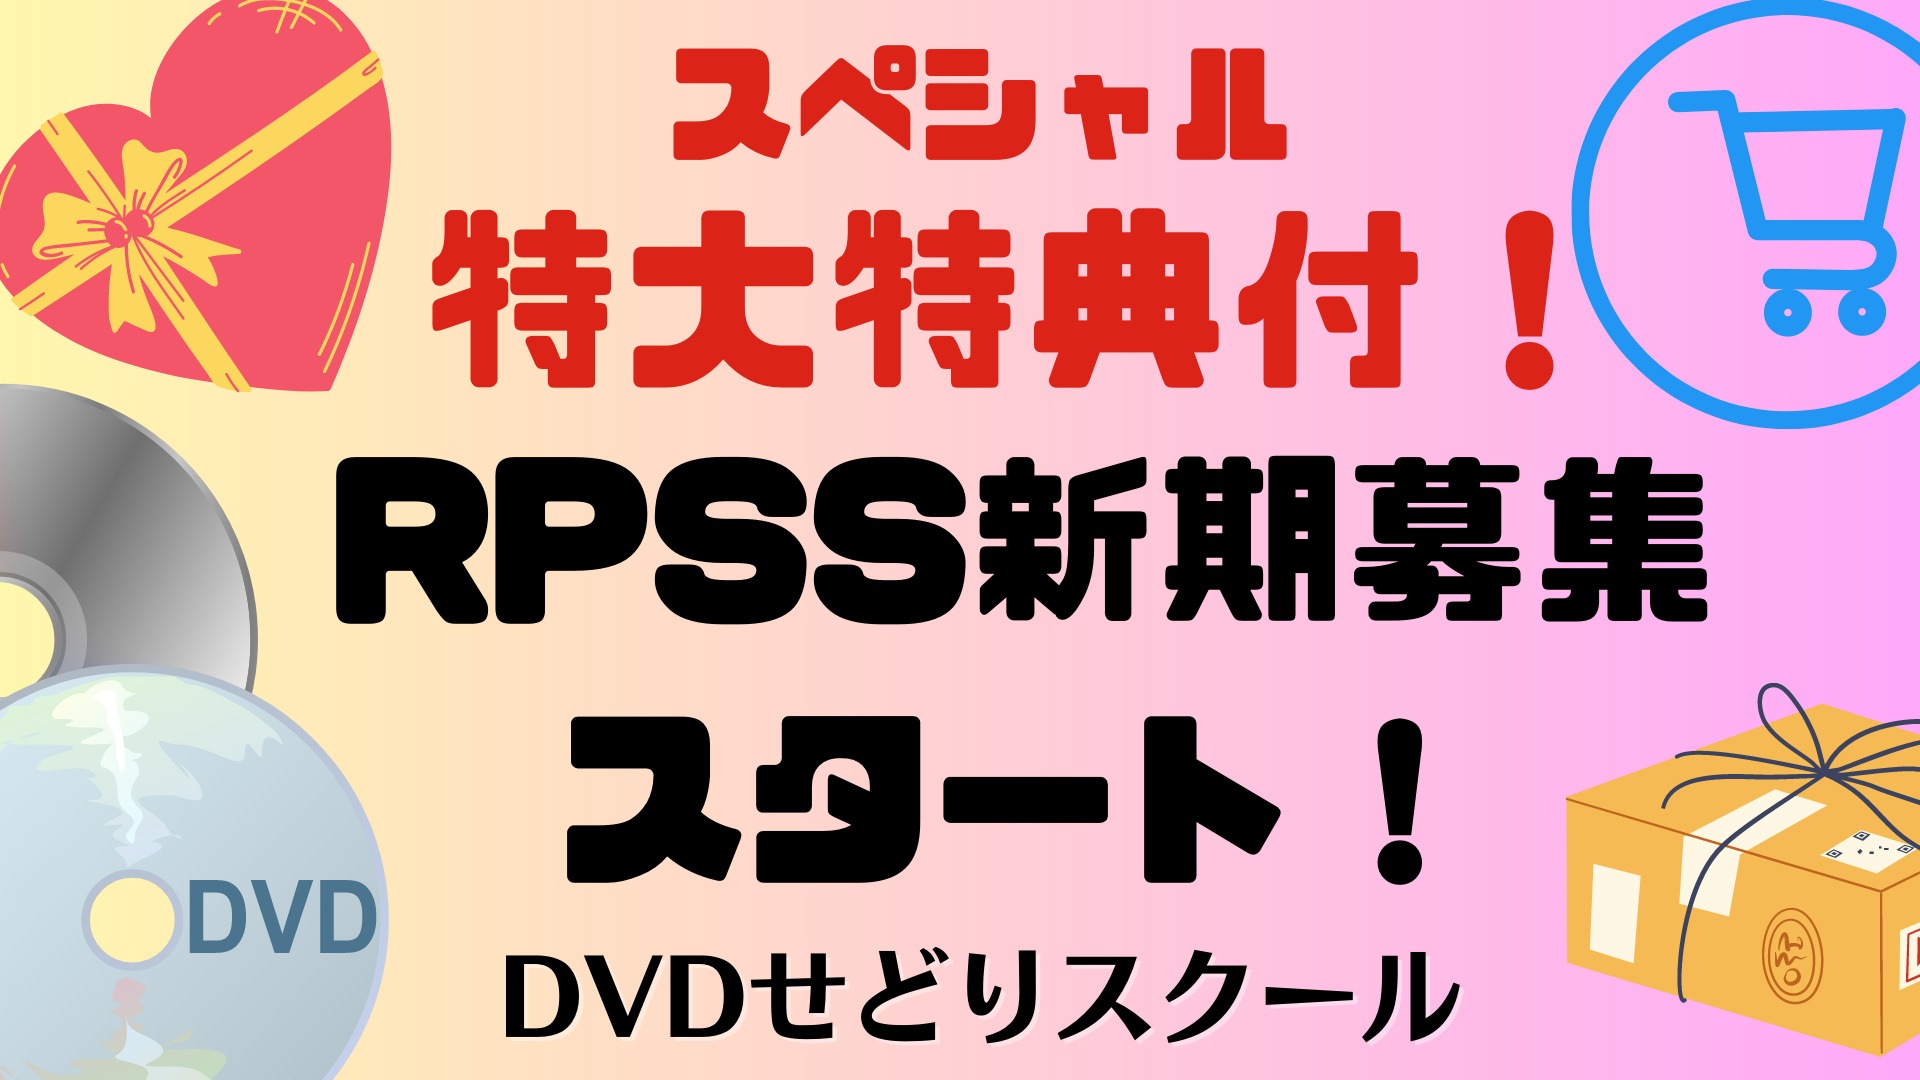 RPSS